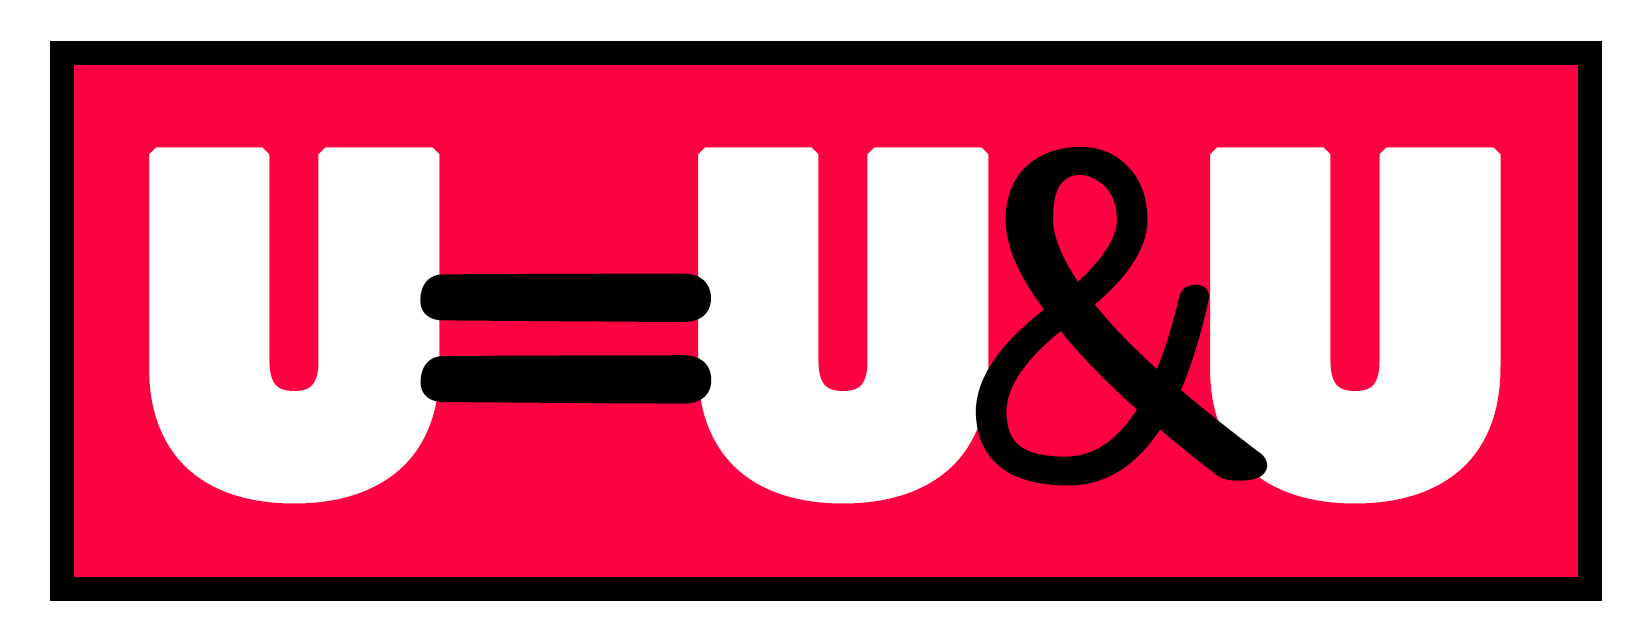 U=U&U